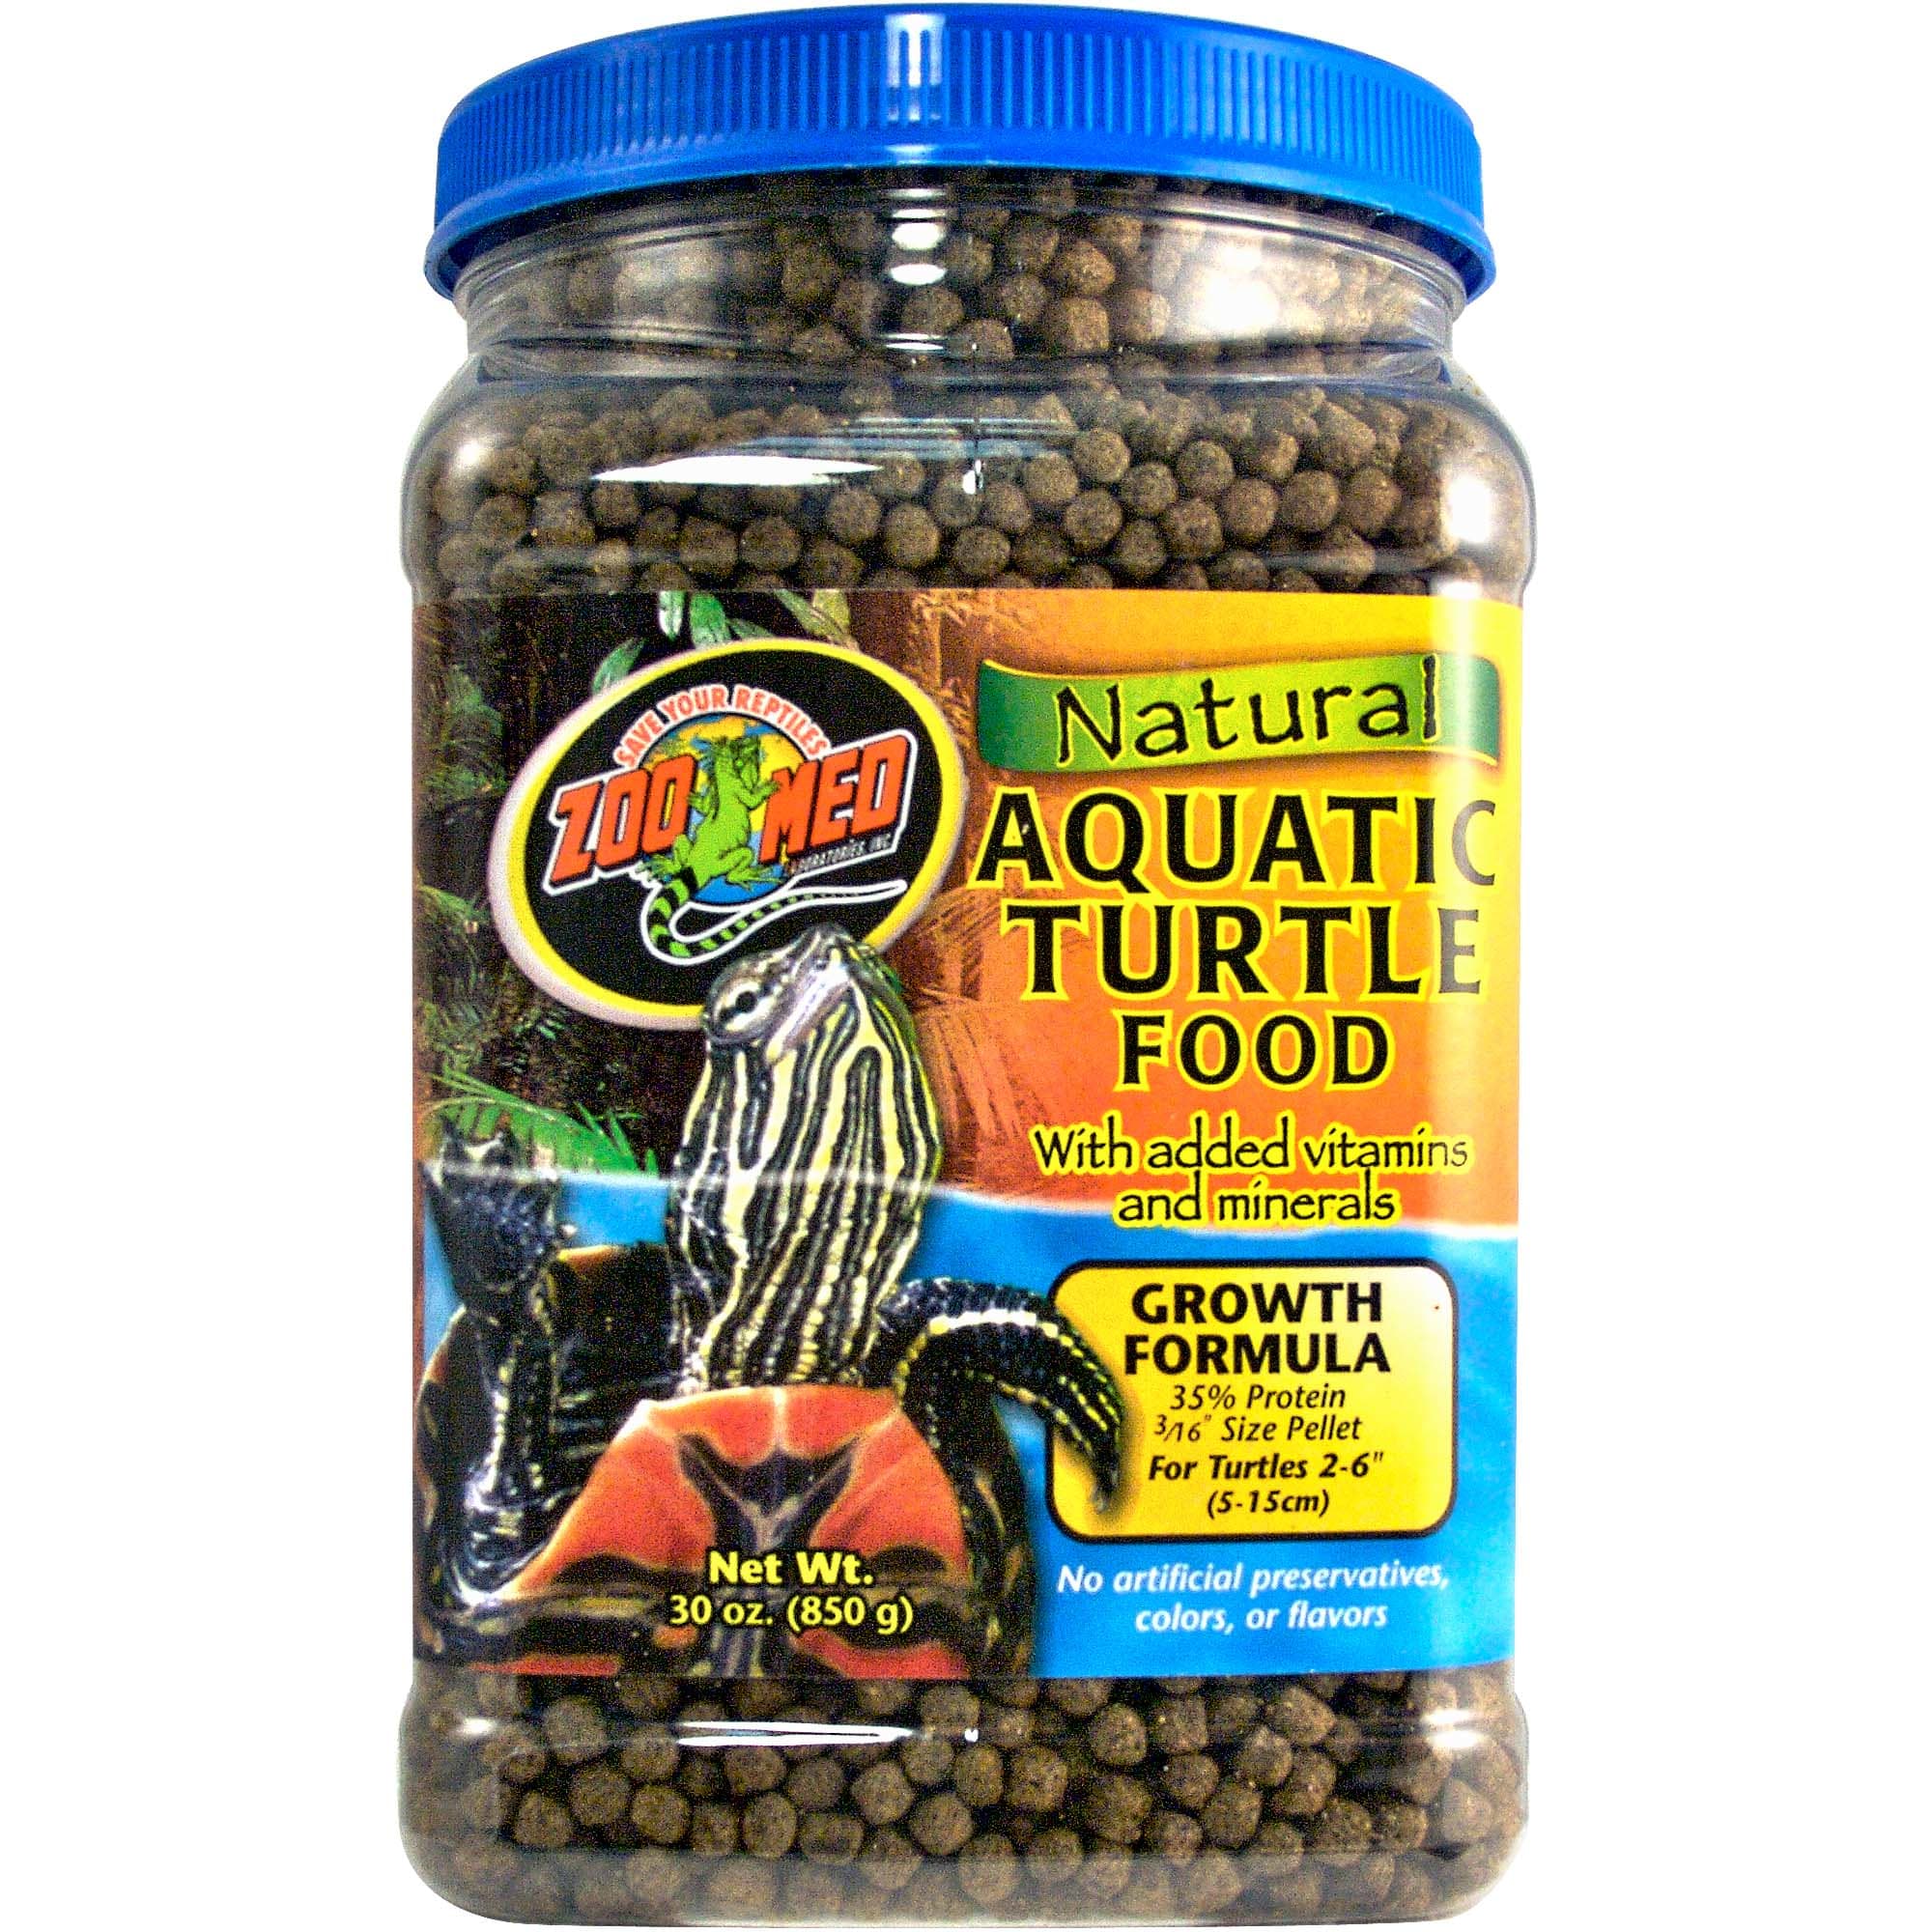 Zilla Aquatic Turtle Food (6 oz)